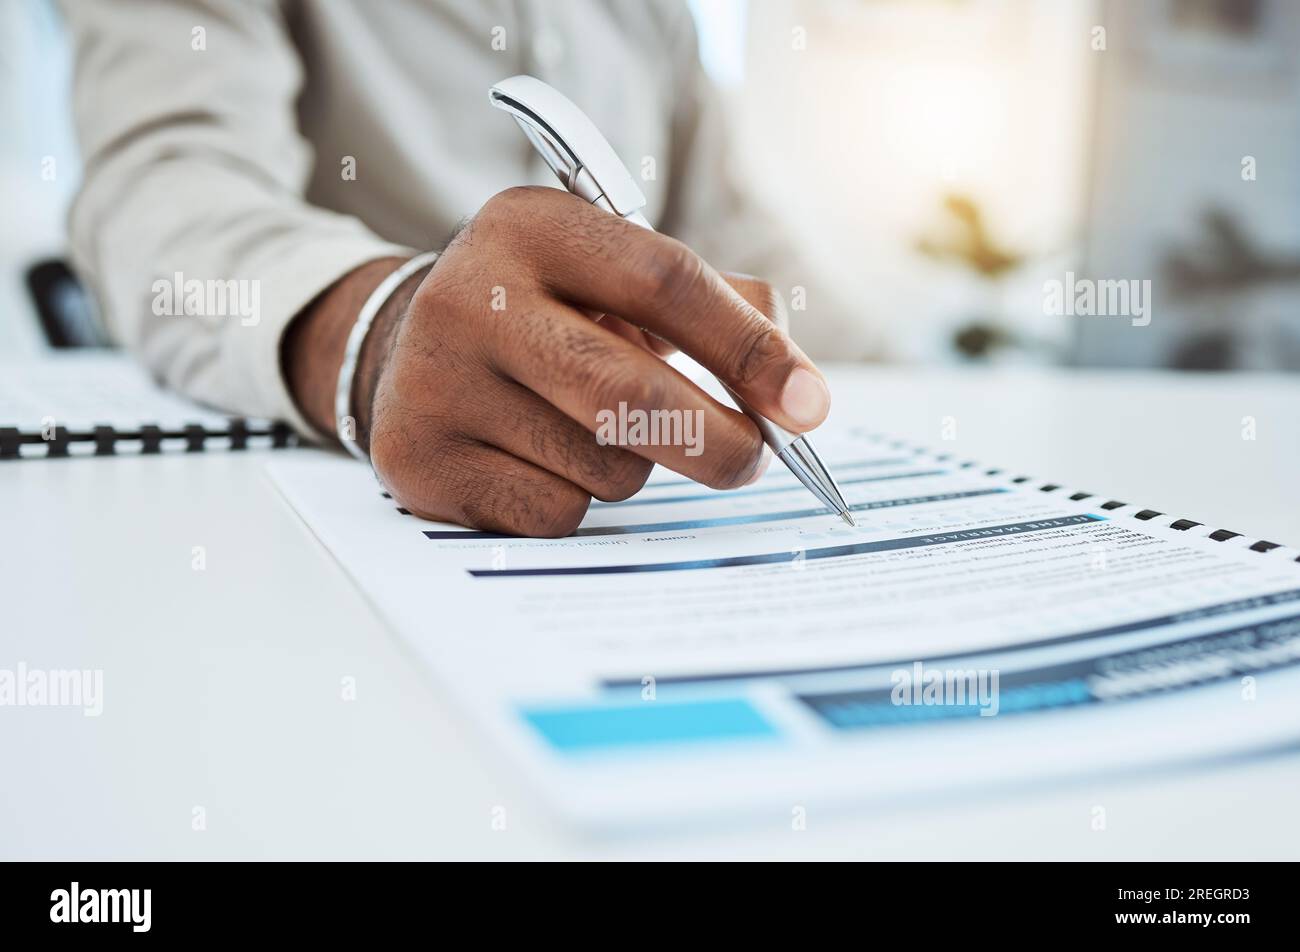 Hand-, Schreib- und Ehevertrag mit Stift für die Scheidung, Prozess oder Unterschrift für Vermögenswerte auf dem Schreibtisch. Mann, unterschreib Papiere oder Dokumente in der Anwaltskanzlei Stockfoto